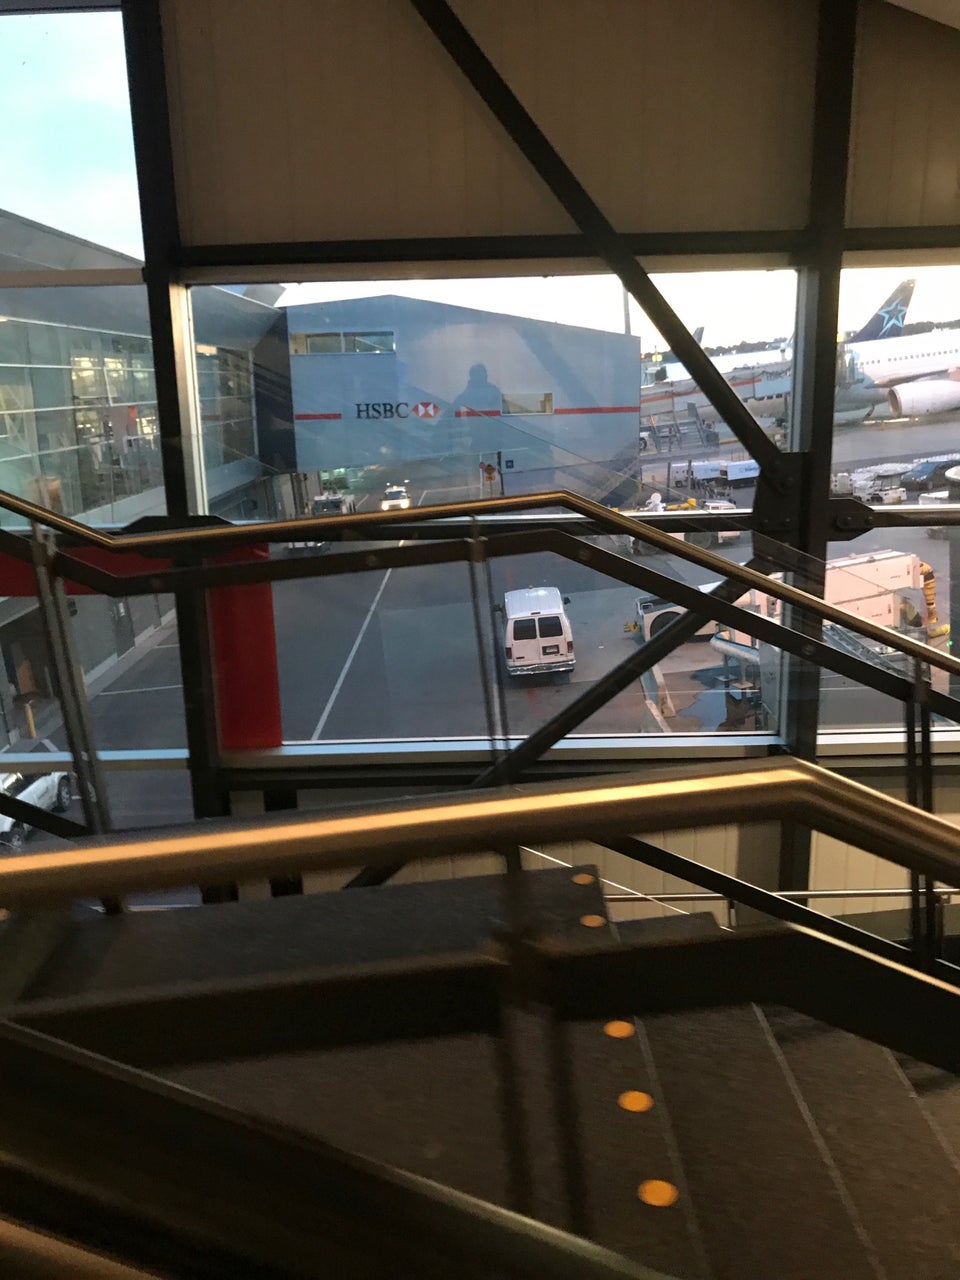 Photo of Aéroport Montréal-Trudeau Airport